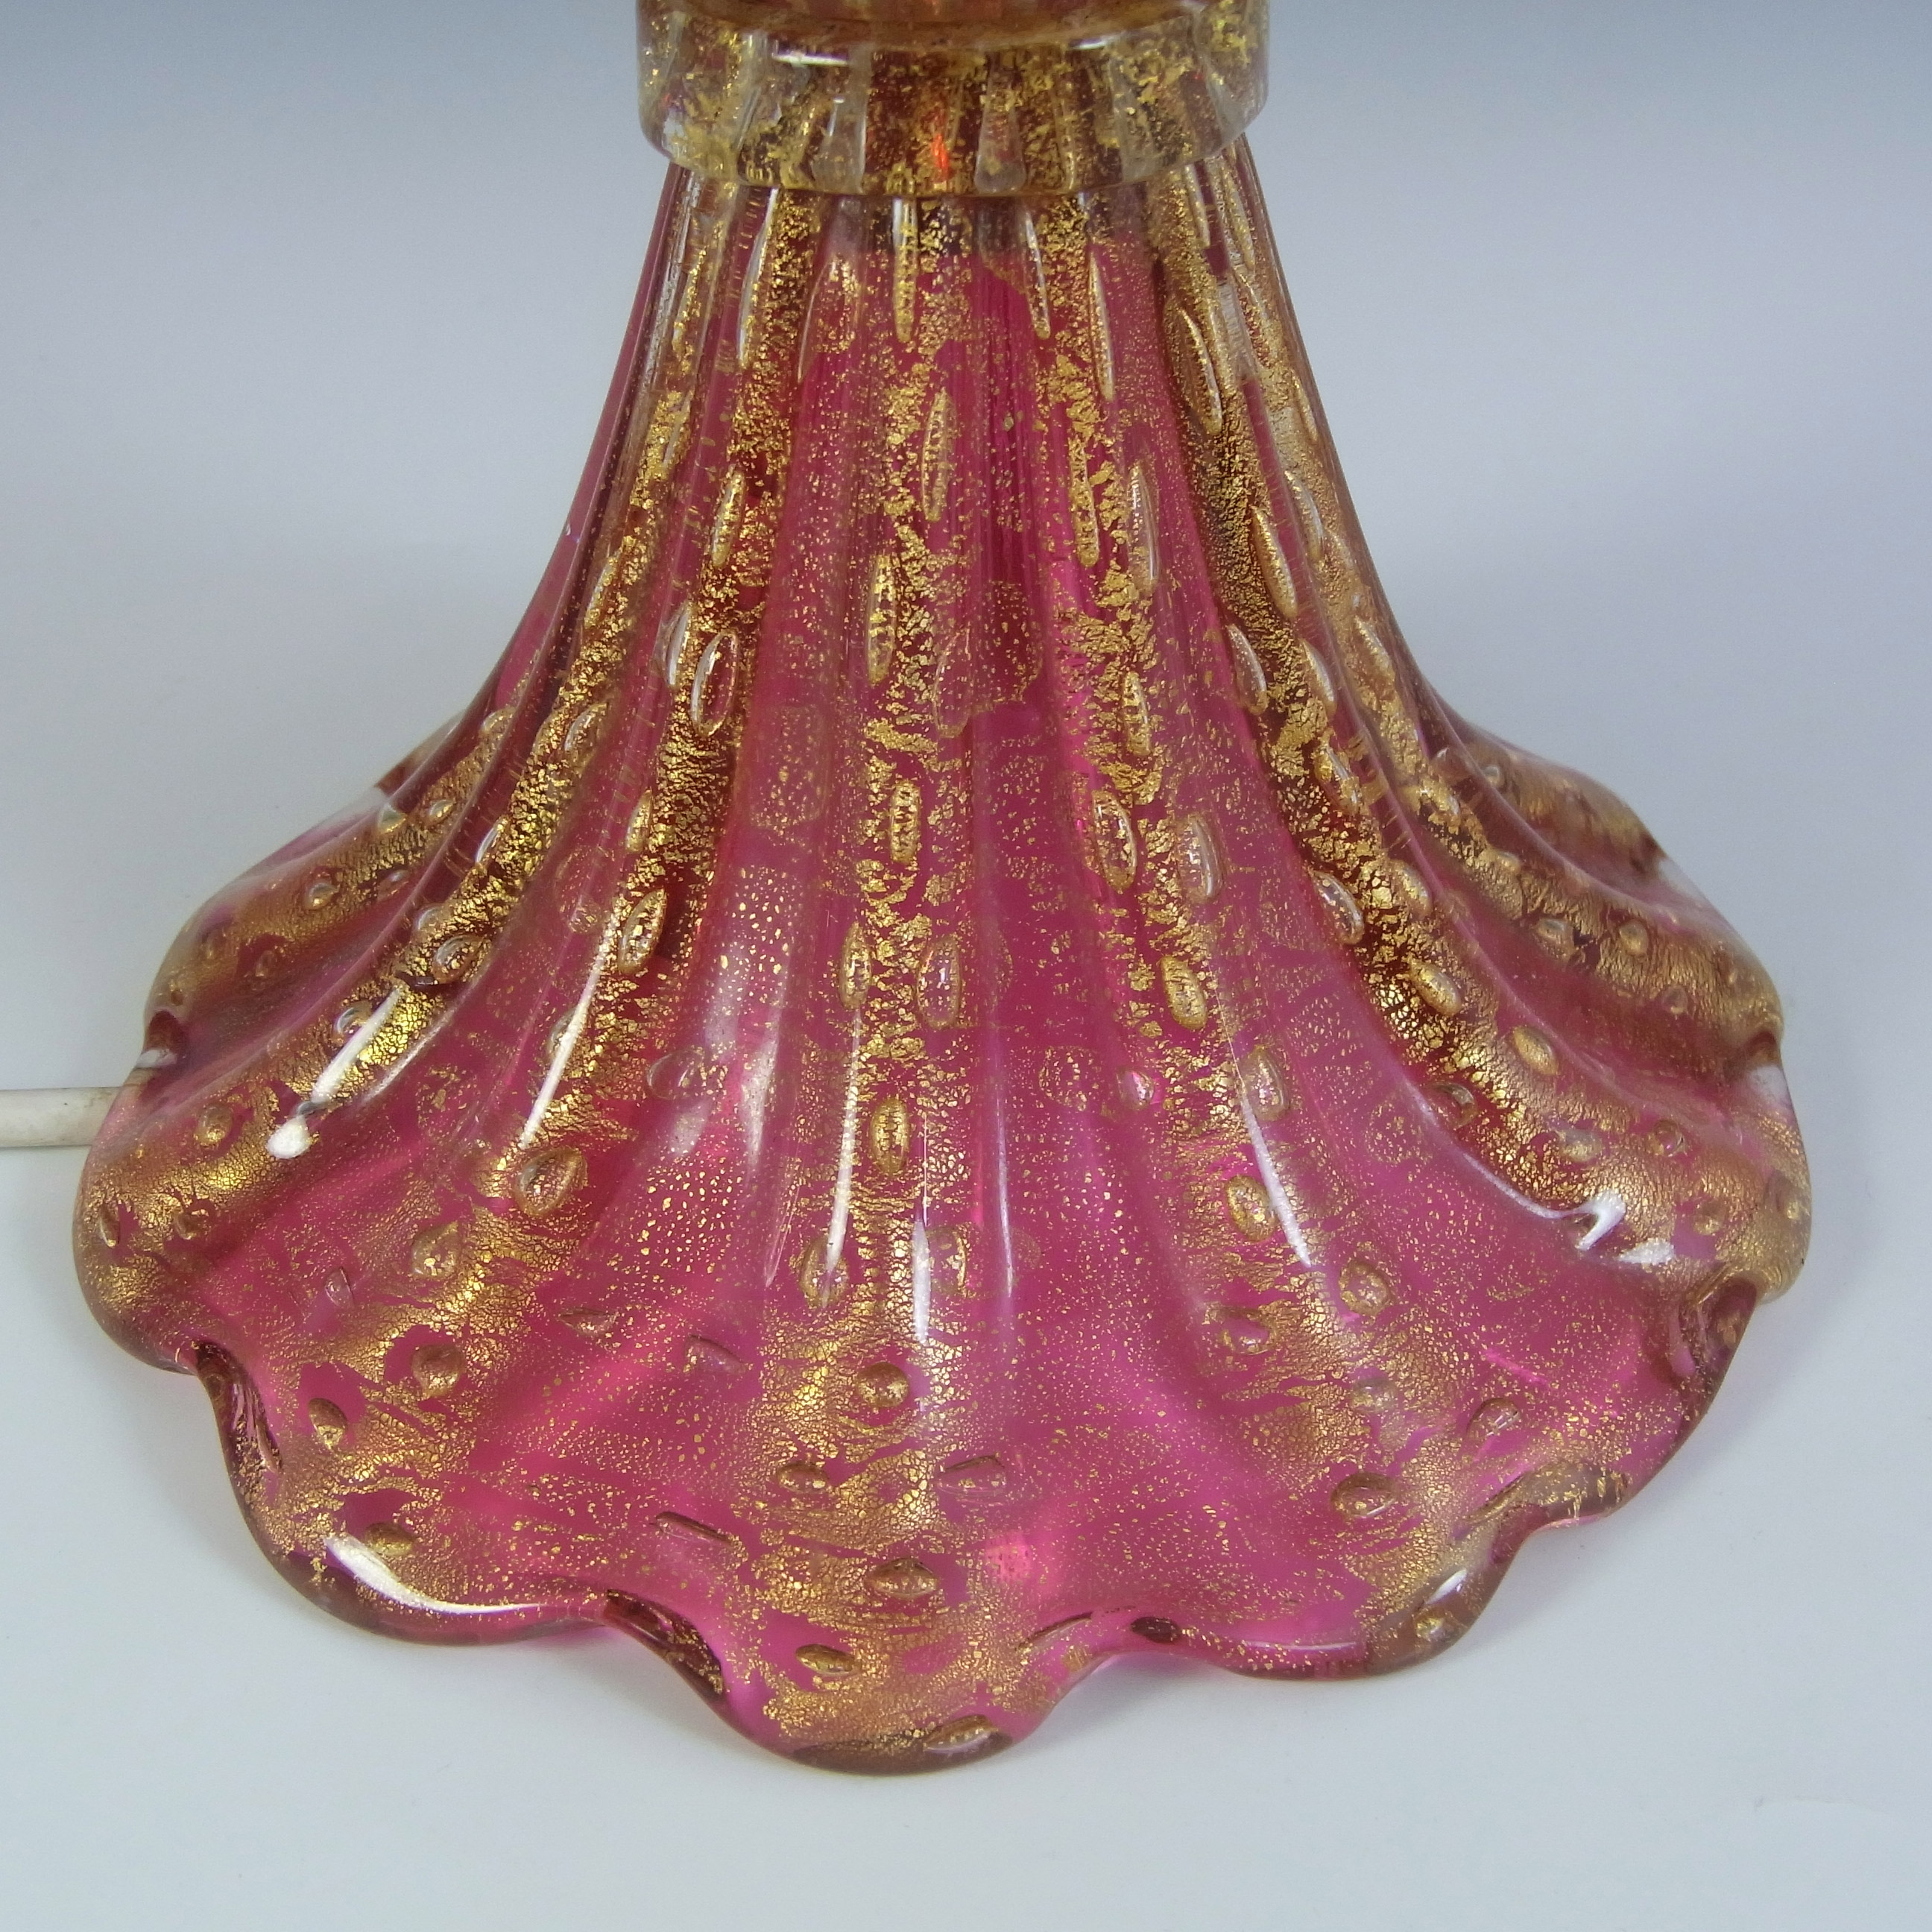 Barovier & Toso Murano Cordonato Oro Gold Leaf Pink Glass Lamp - Click Image to Close